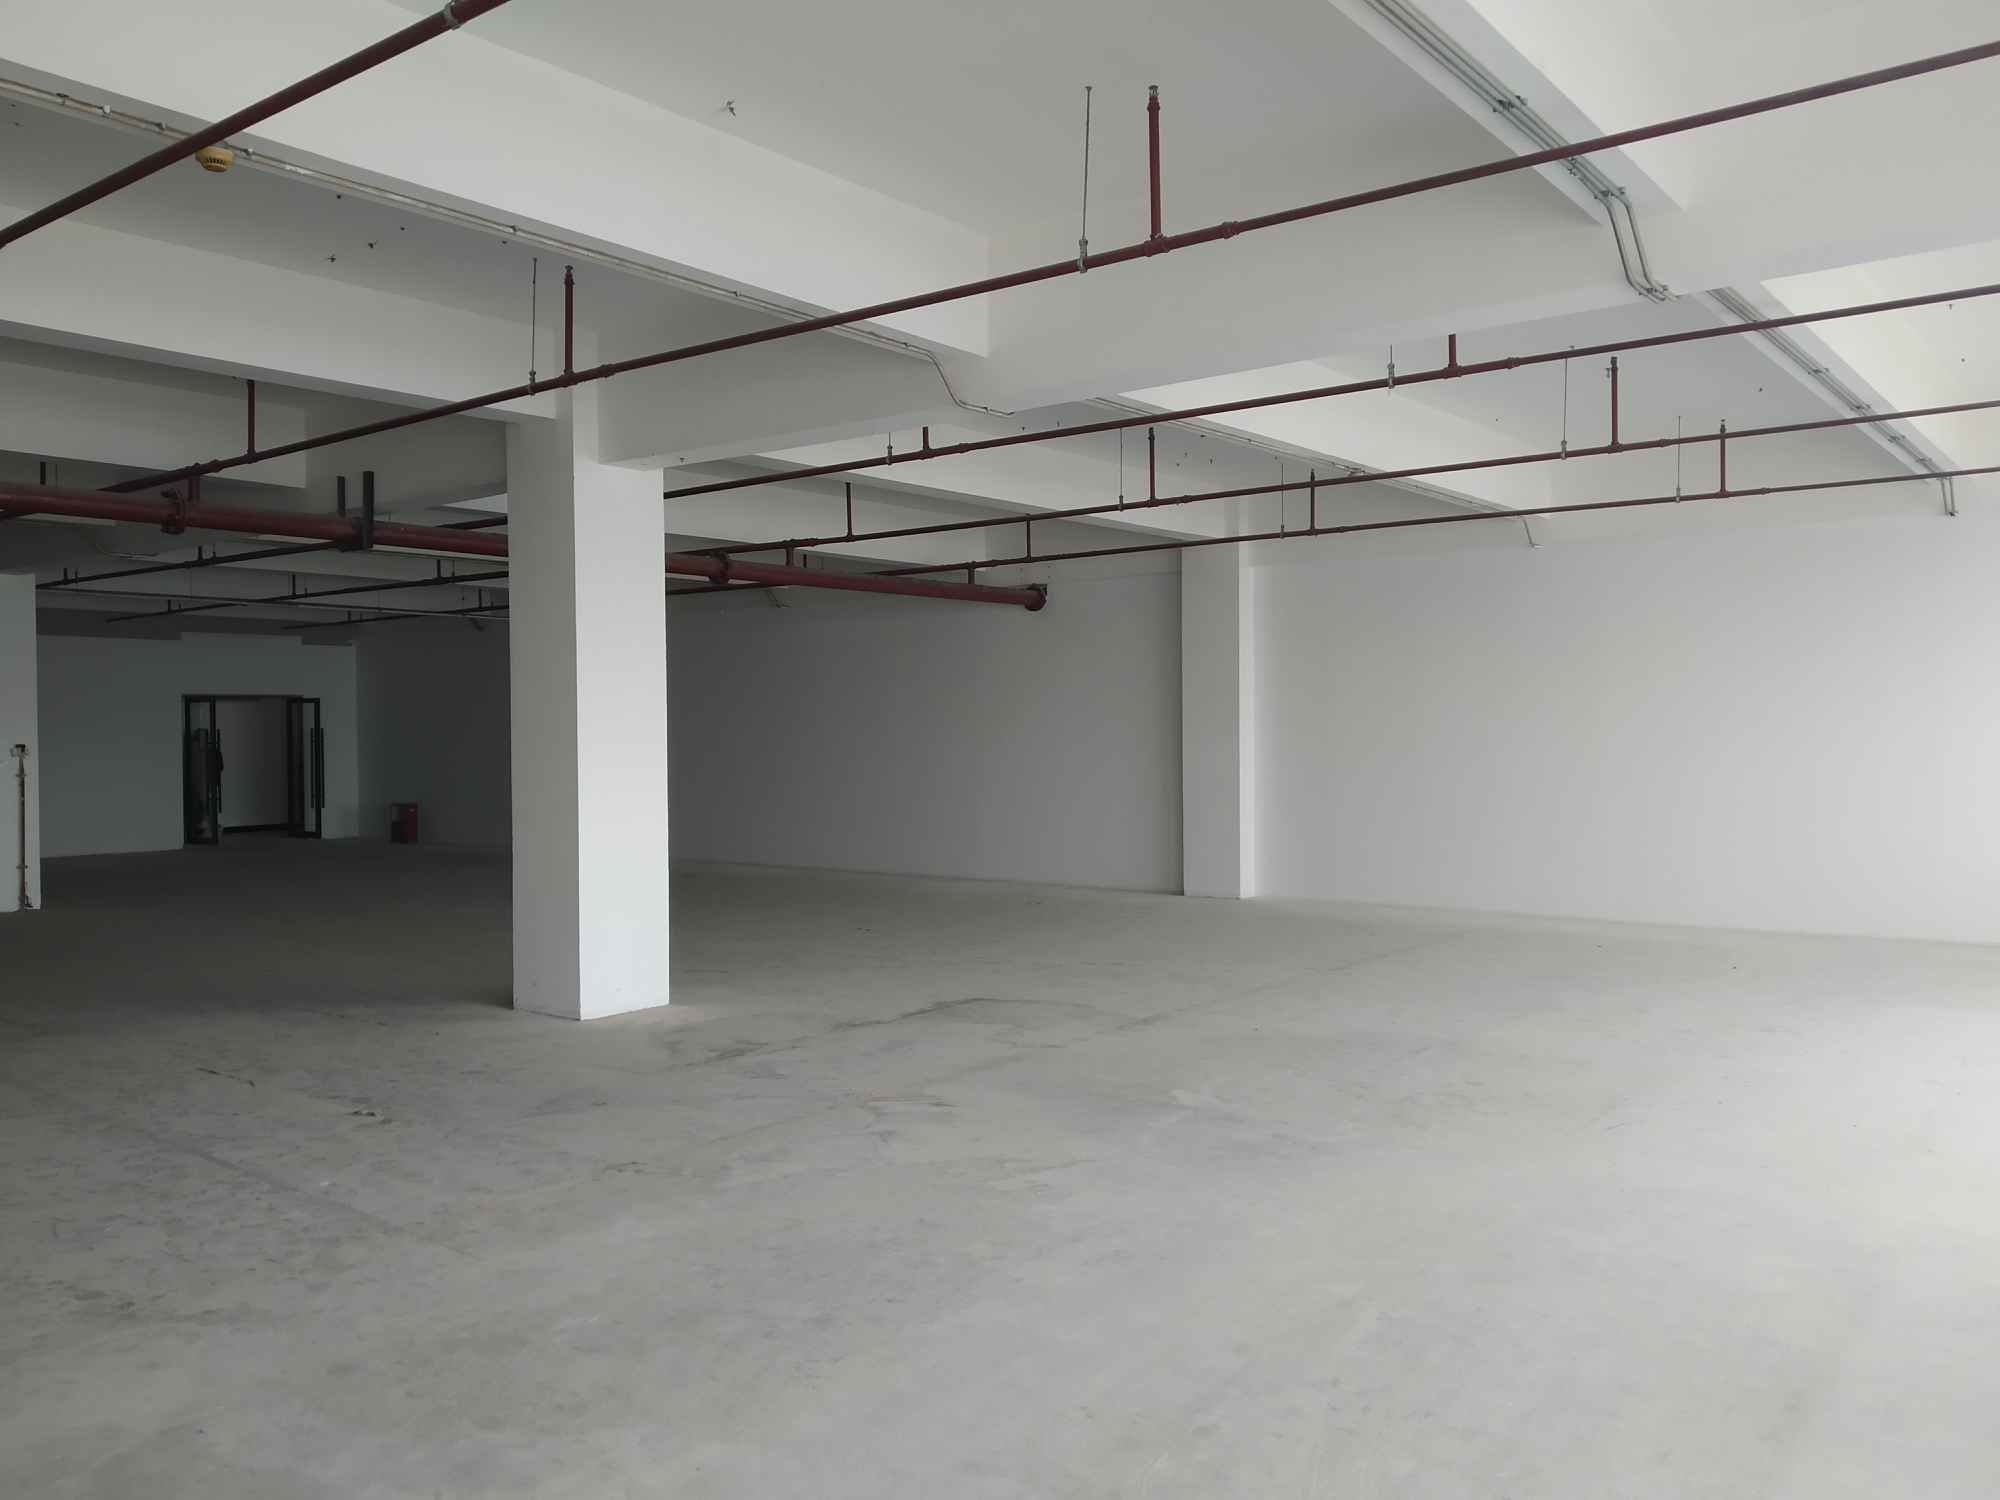 微趣958创拓工坊2380平米办公室出租-租金价格1.60元/m²/天